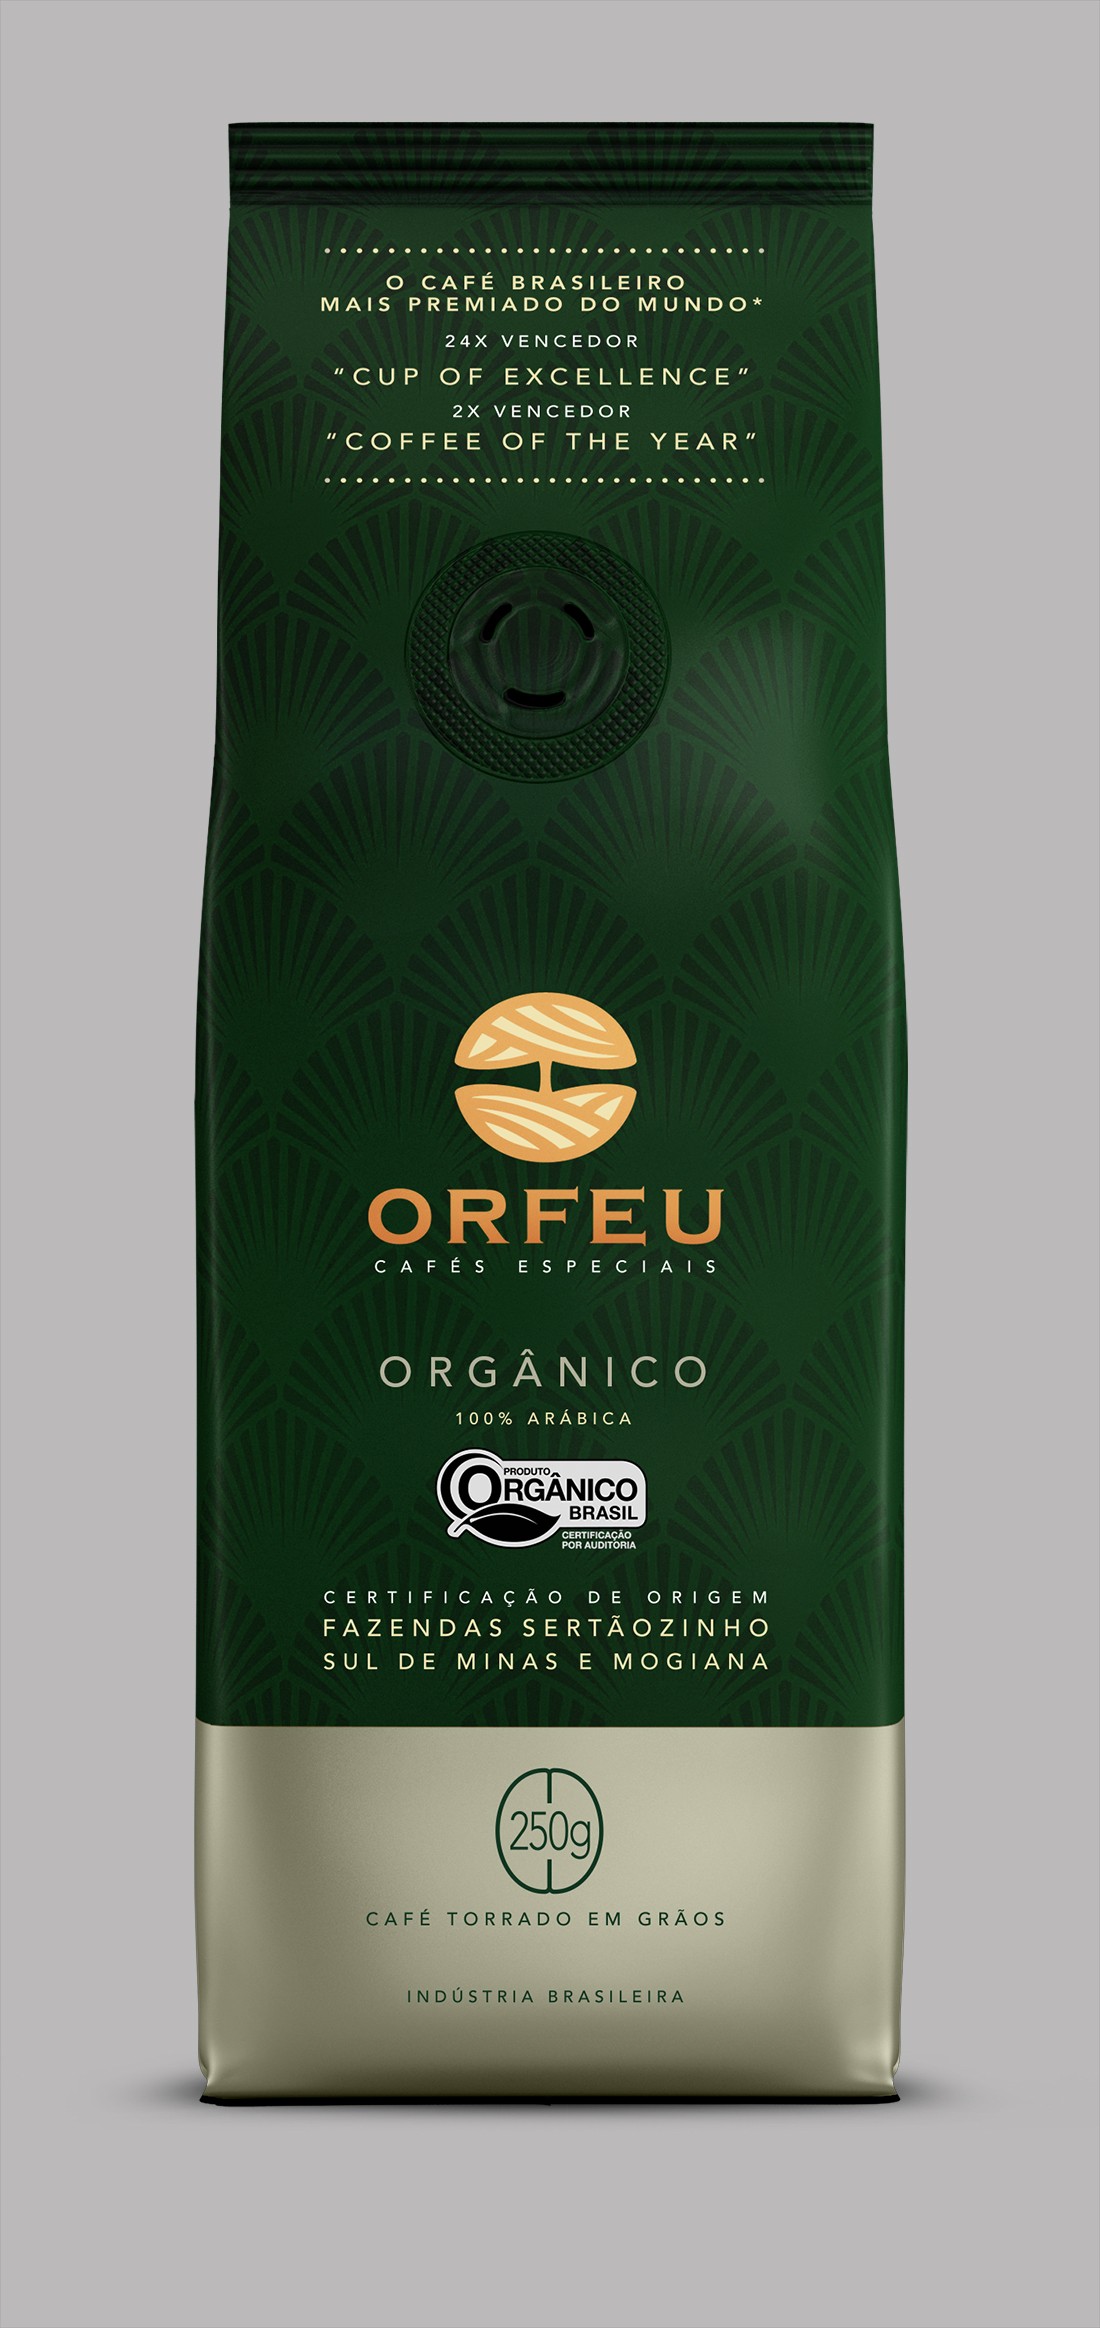 Café Orfeu Orgânico (Foto: Divulgação)